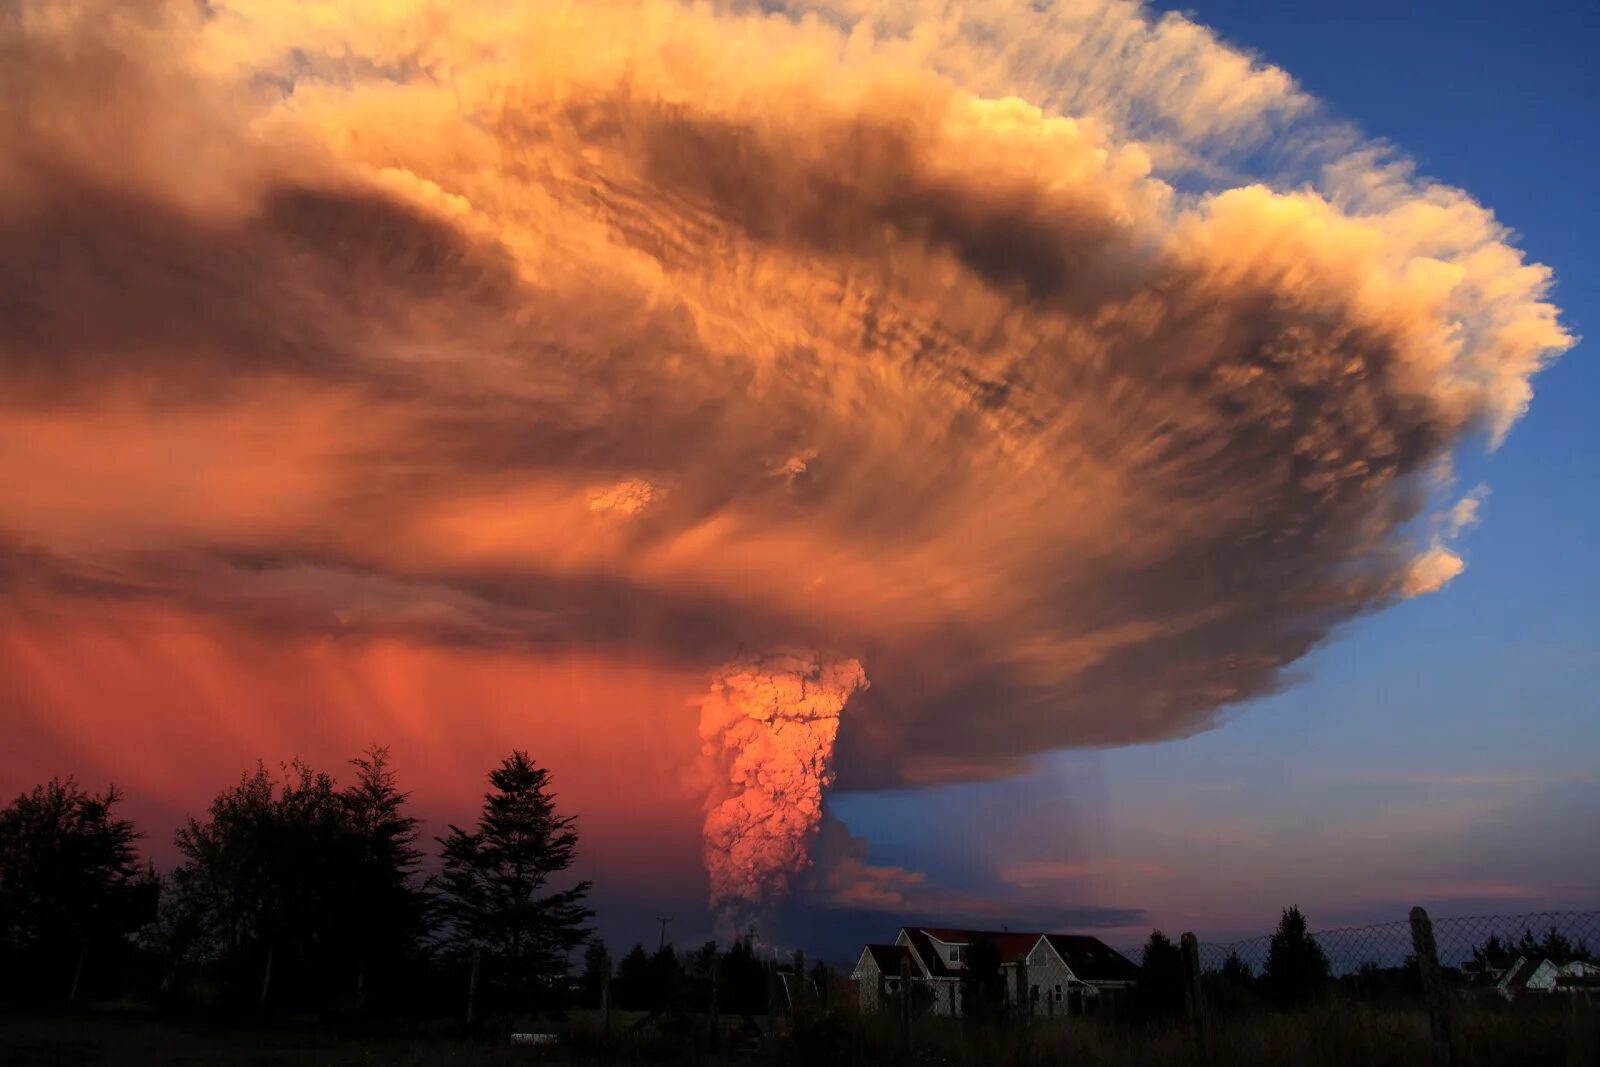 Nature disasters. Вулкан Кальбуко в Чили. Извержение вулкана Кальбуко. Извержение вулкана Кальбуко Чили 2015. Взрыв вулкана Кальбуко в Чили 2015.